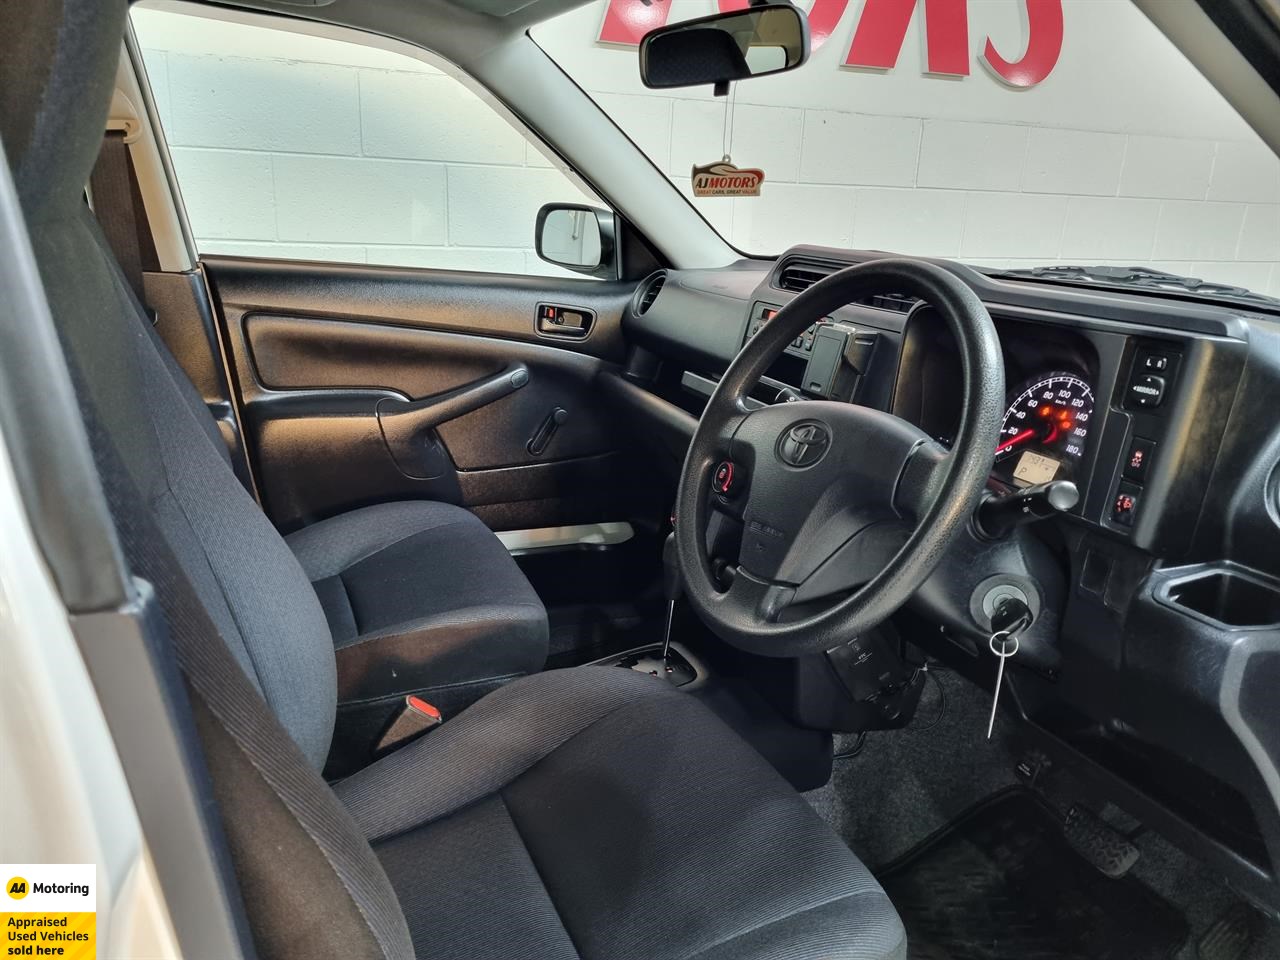 2015 Toyota Probox